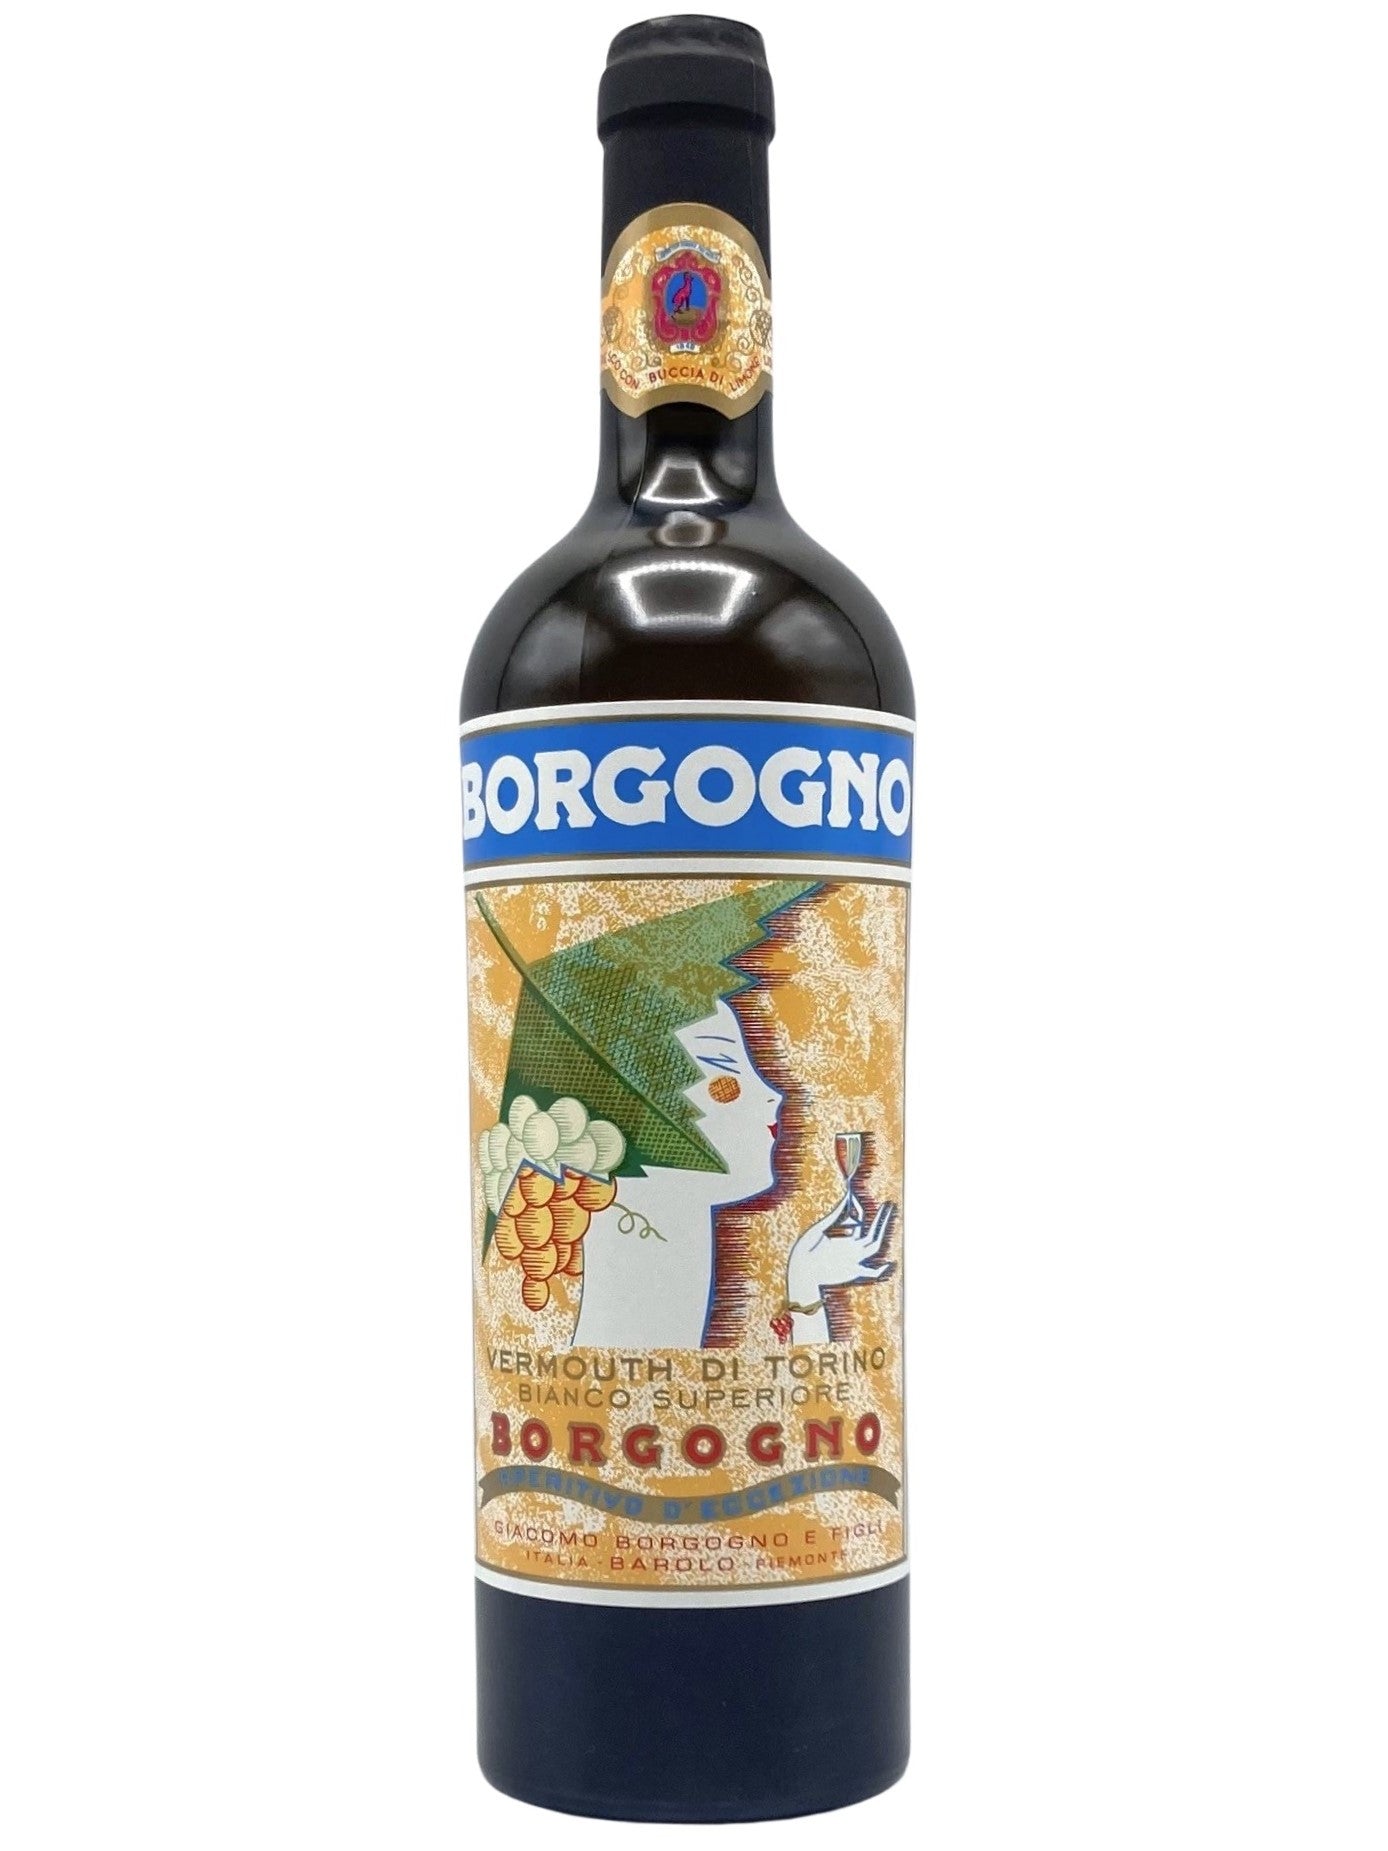 Borgogno Vermouth Bianco Superiore